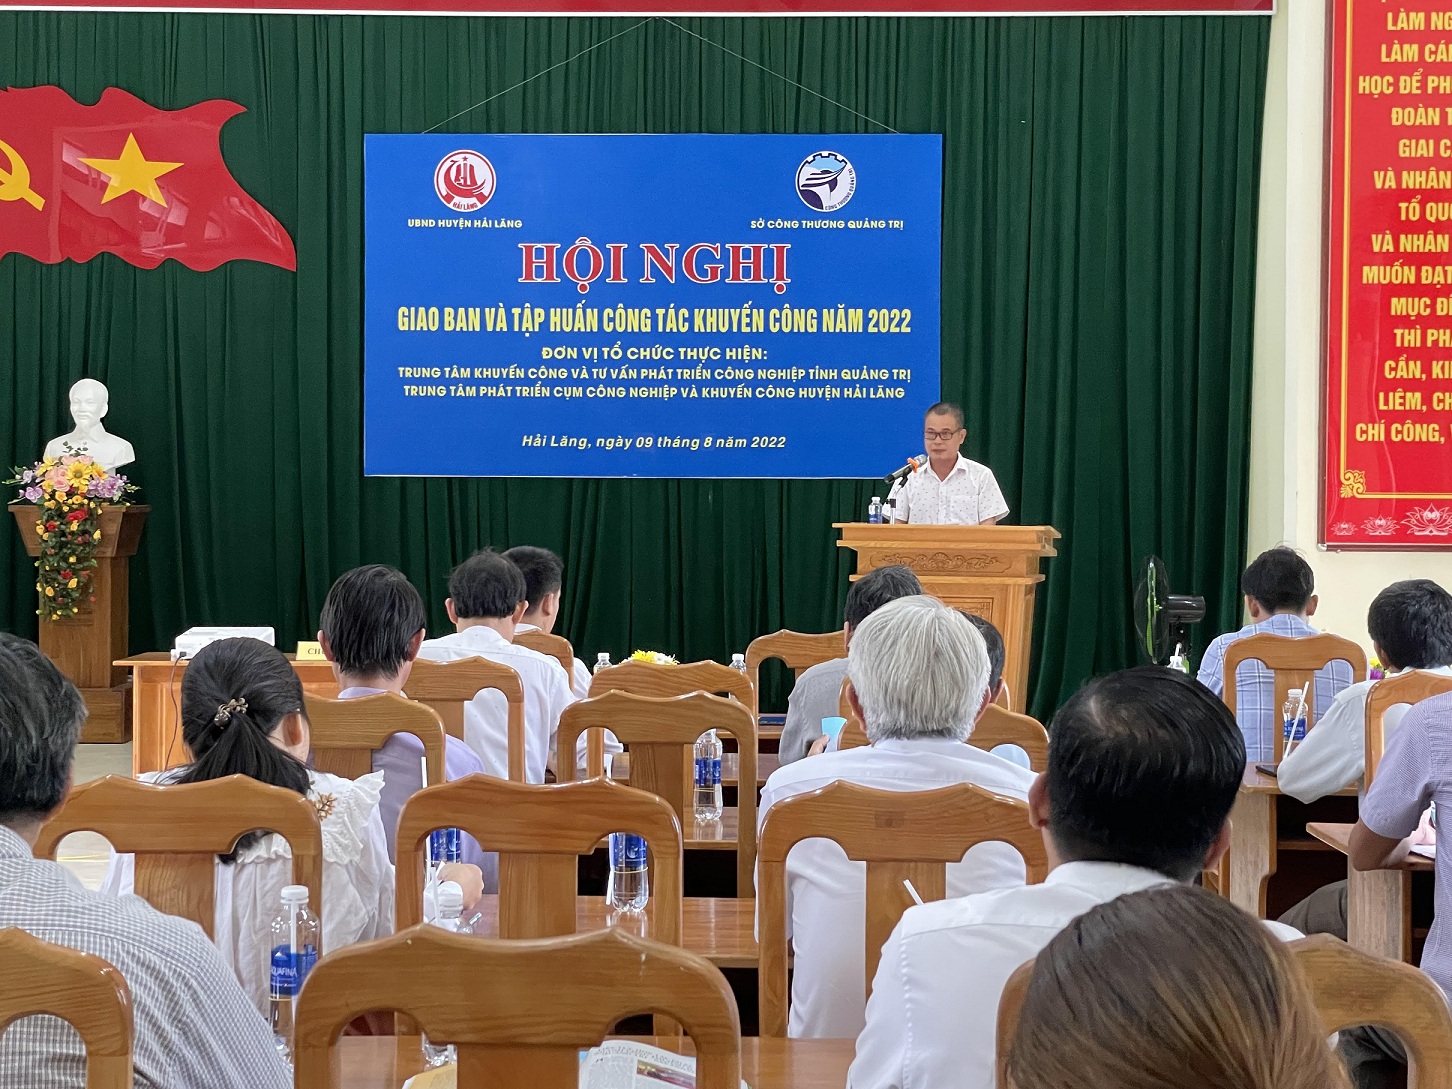 Ông Nguyễn Trương Hoàn - GĐ Trung tâm Khuyến công và Tư vấn phát triển công nghiệp tỉnh Quảng Trị phát biểu khai mạc Hội nghị